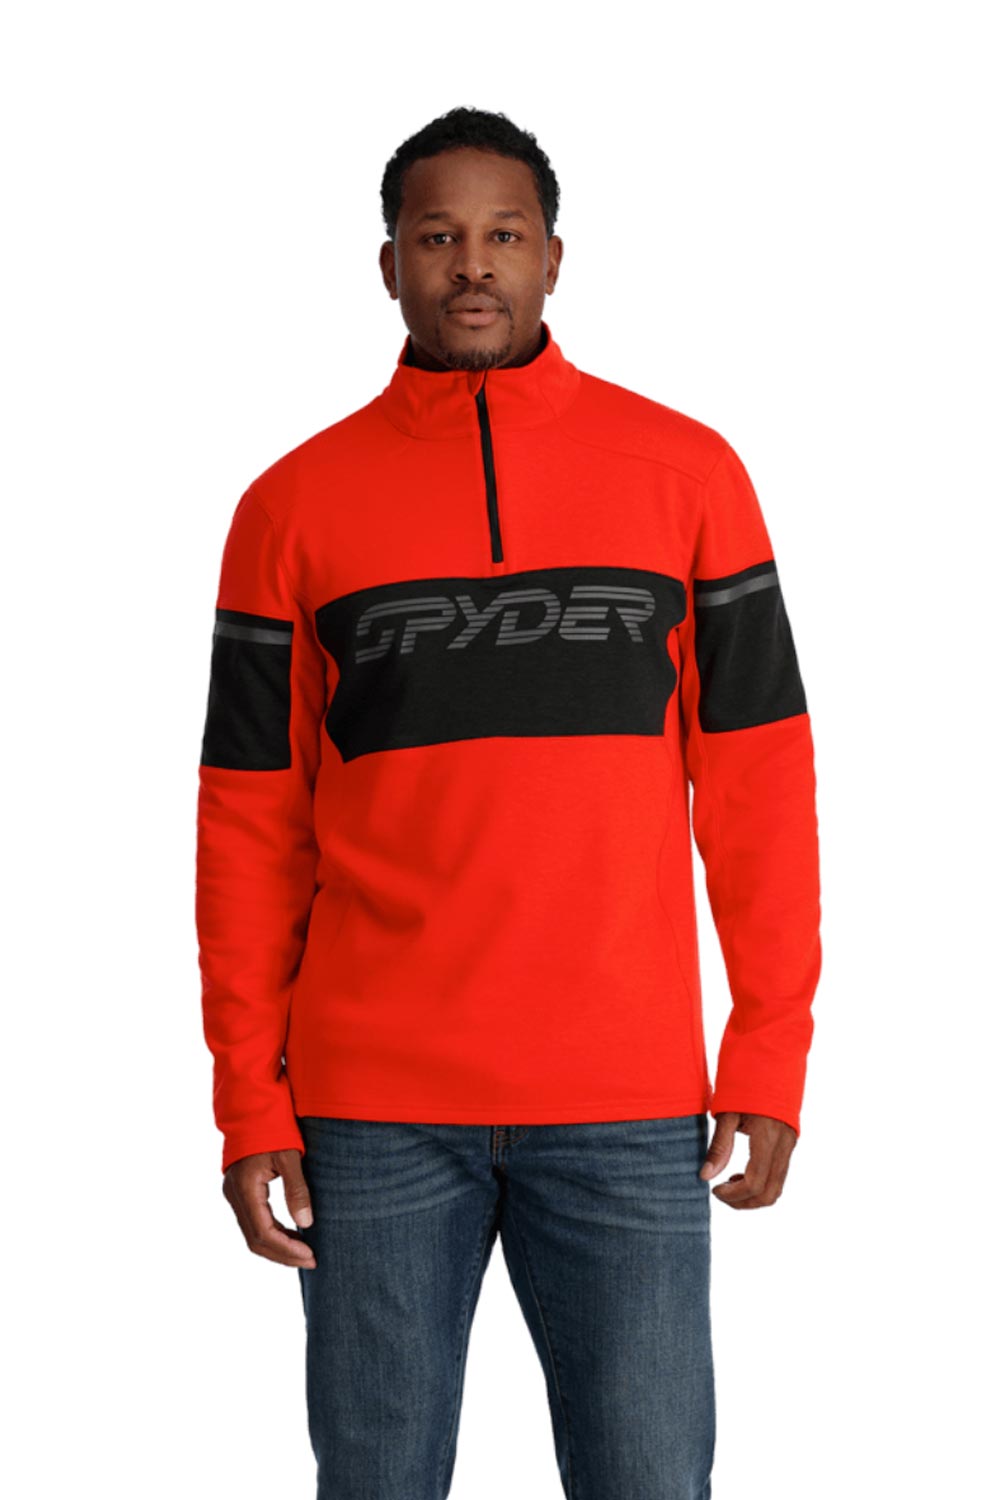 men's Spyder 1/2 zip fleece, red with Spyder logo